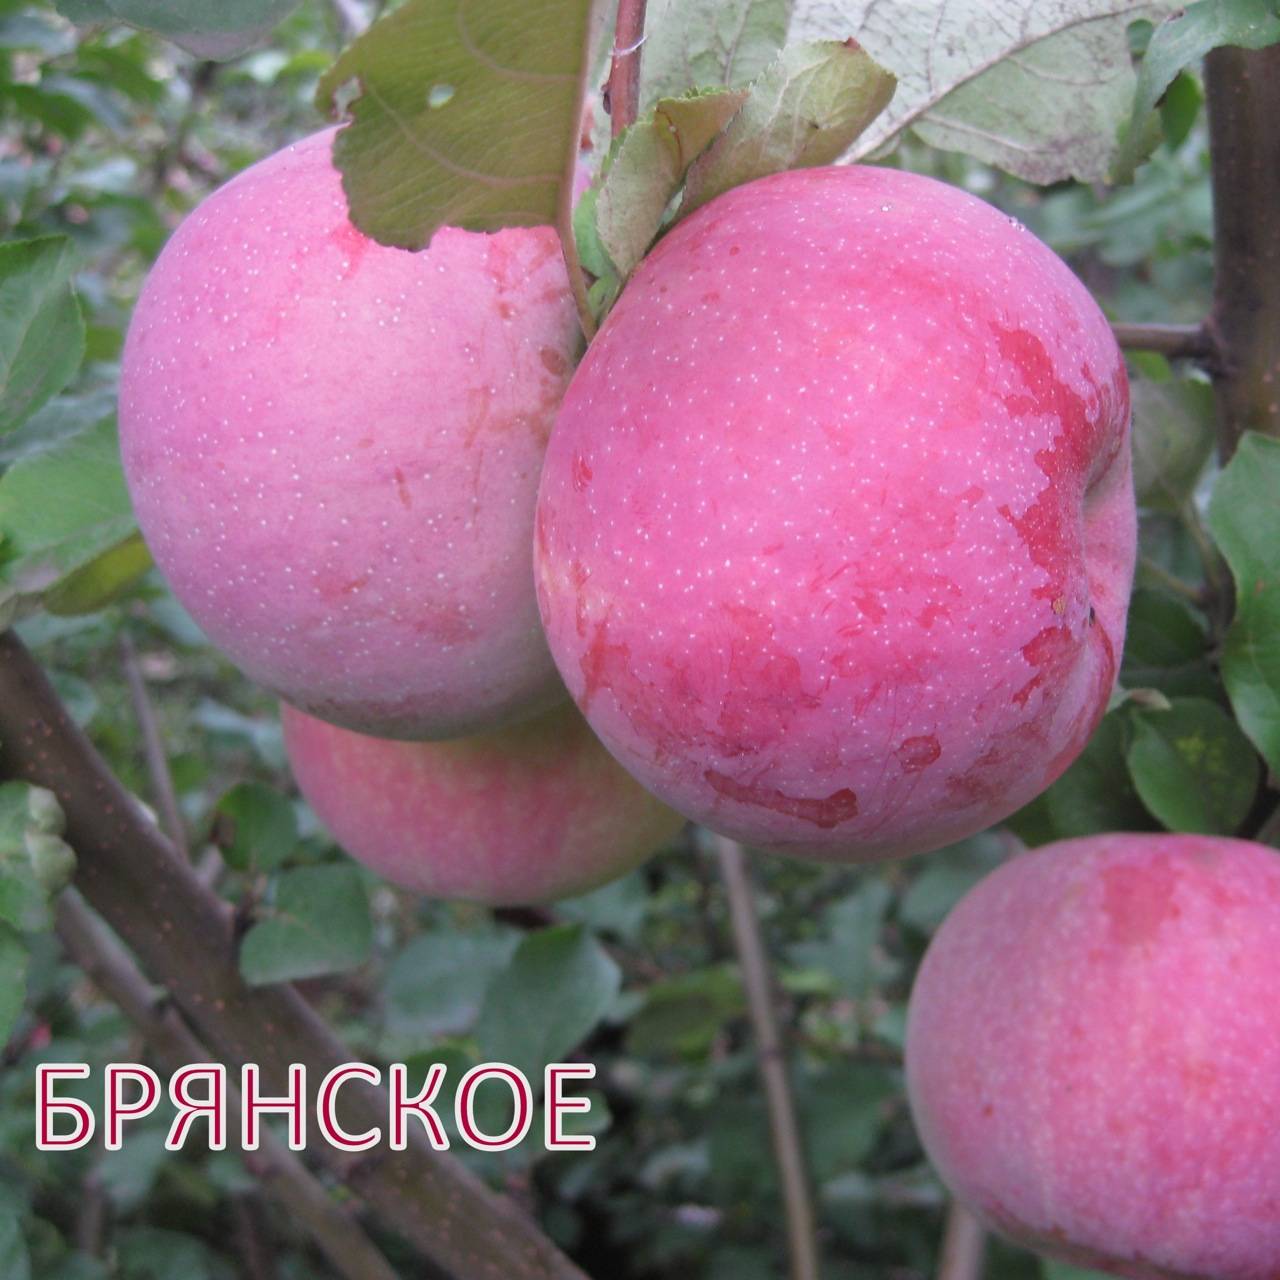 Такая разная яблоня брянское: золотистое, алое, розовое